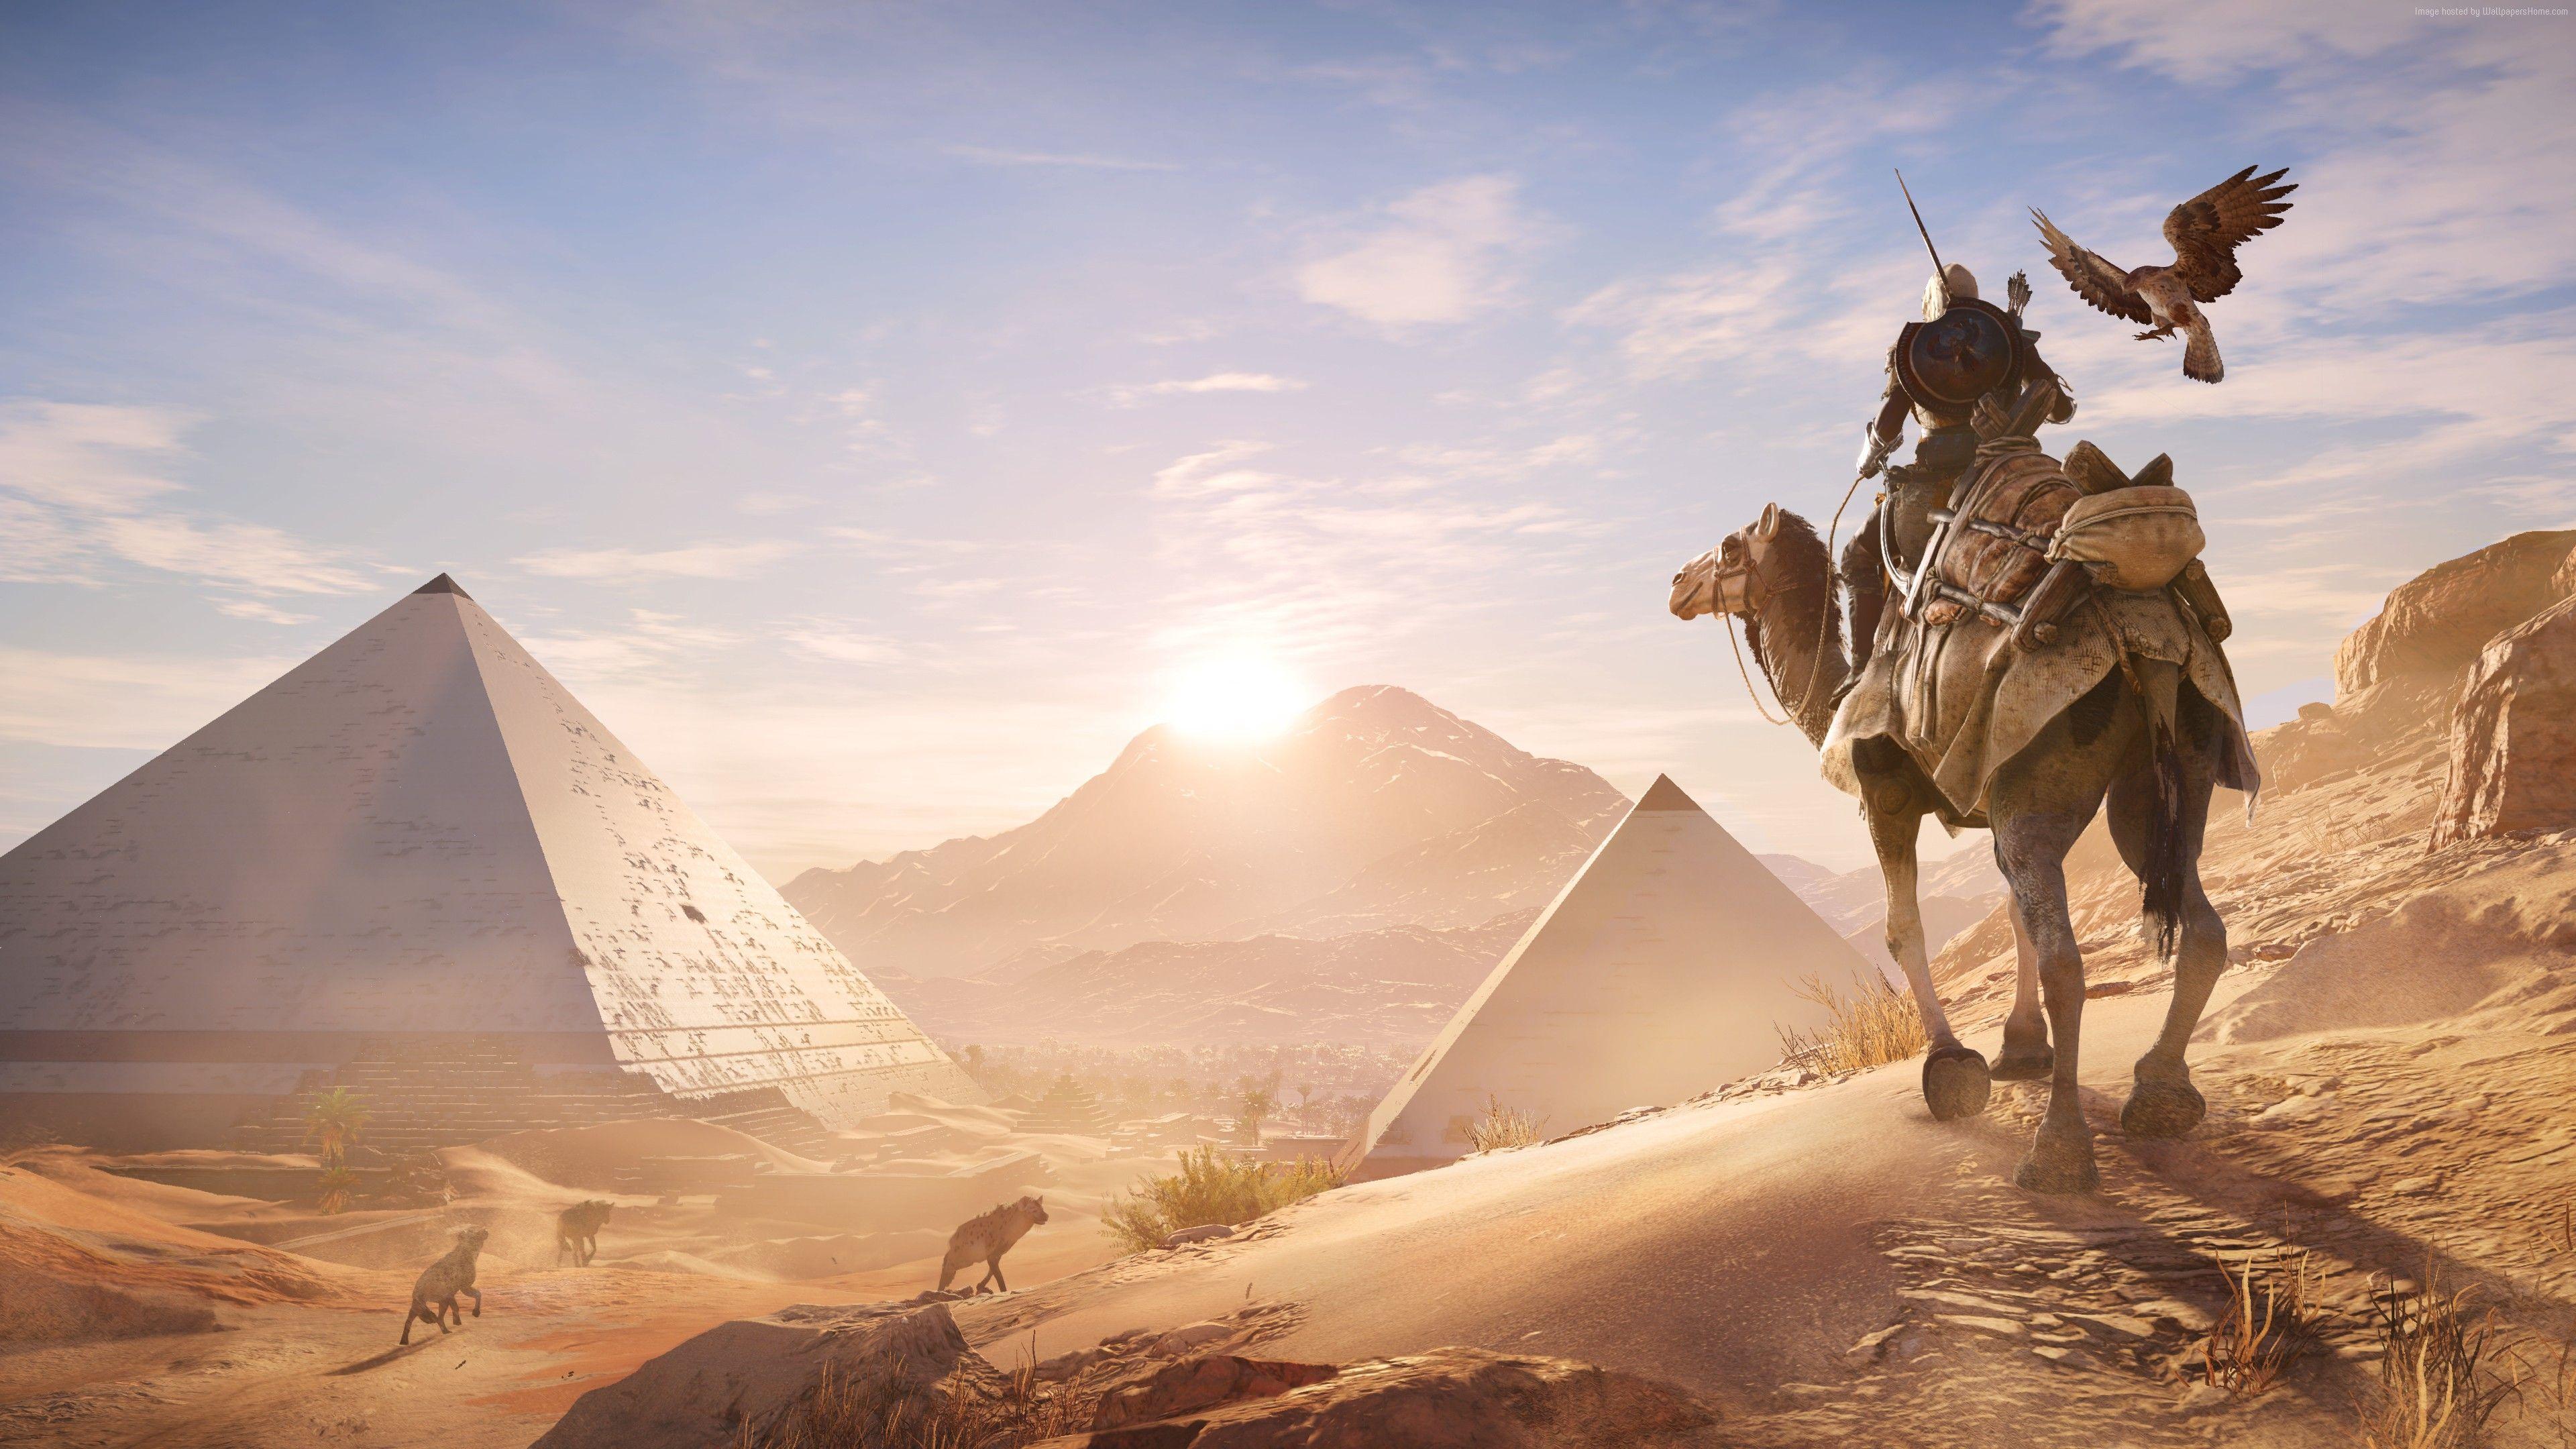 Wallpaper Assassin's Creed Origins, 4k, E3 screenshot, Games